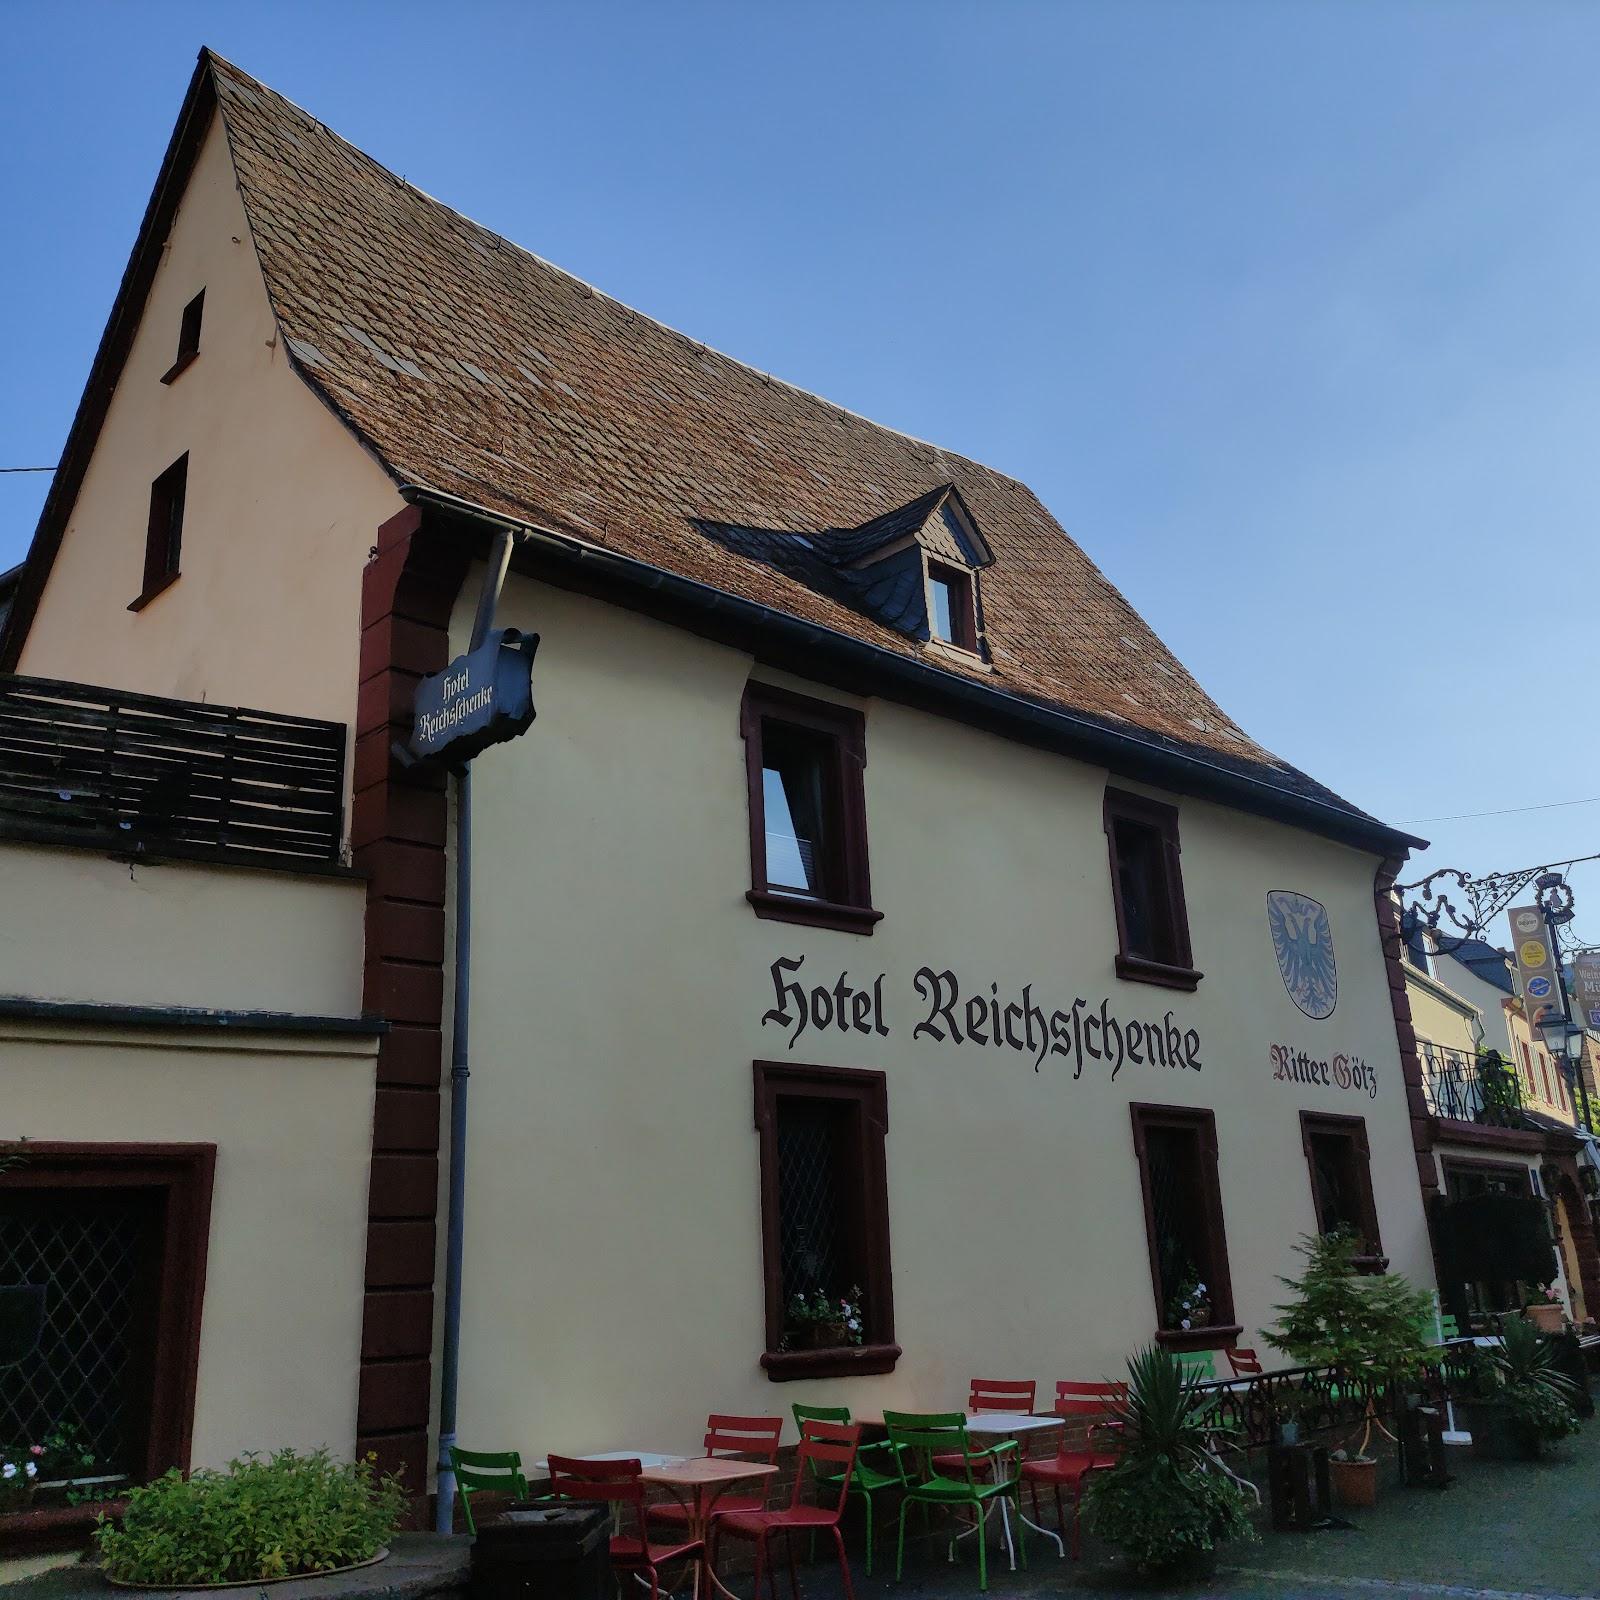 Restaurant "Hotel Reichsschenke Zum Ritter Götz GbR" in Kröv